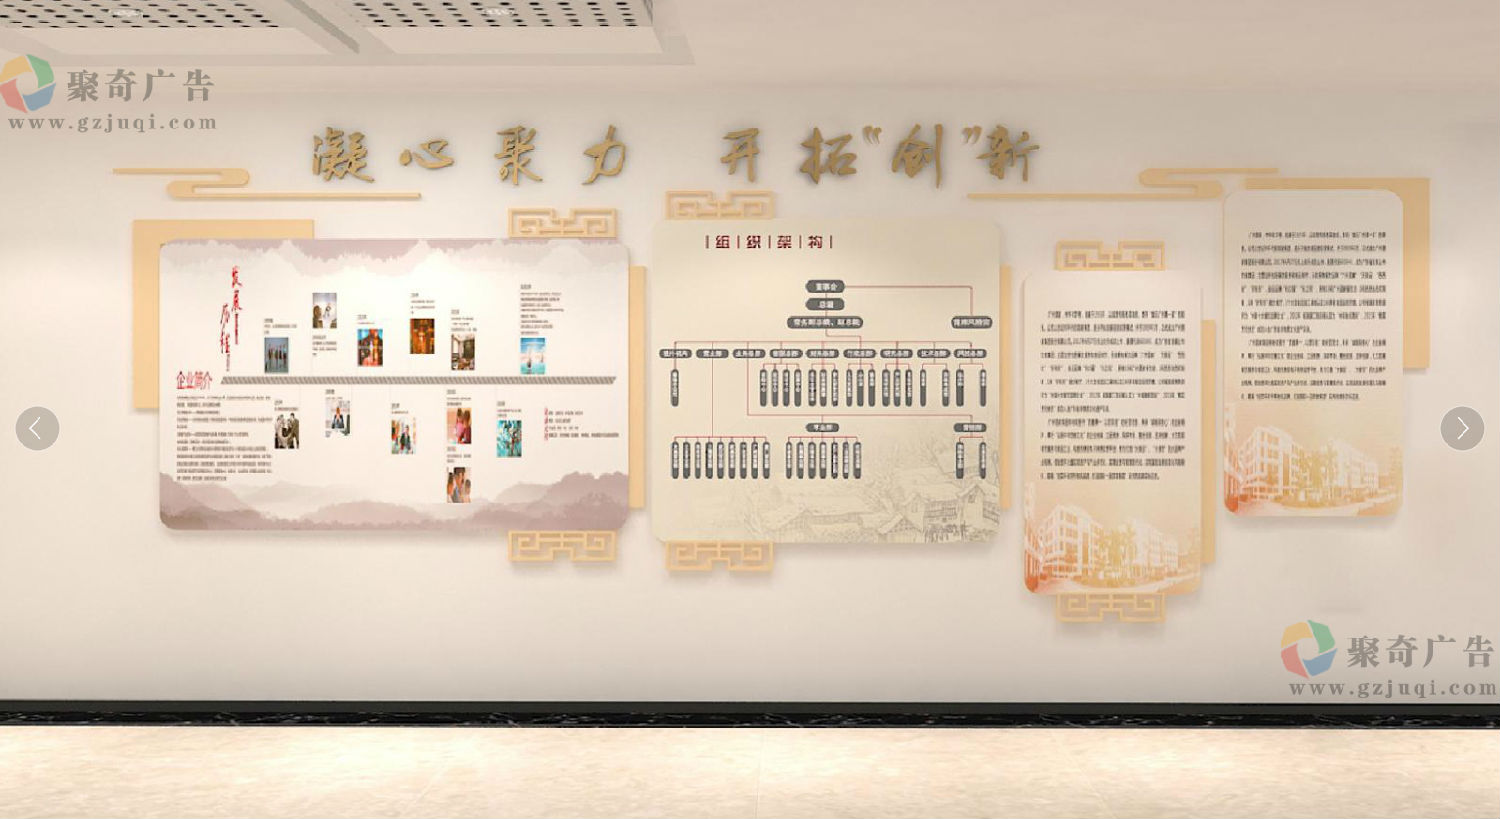 南粤物流企业办公环境文化墙设计